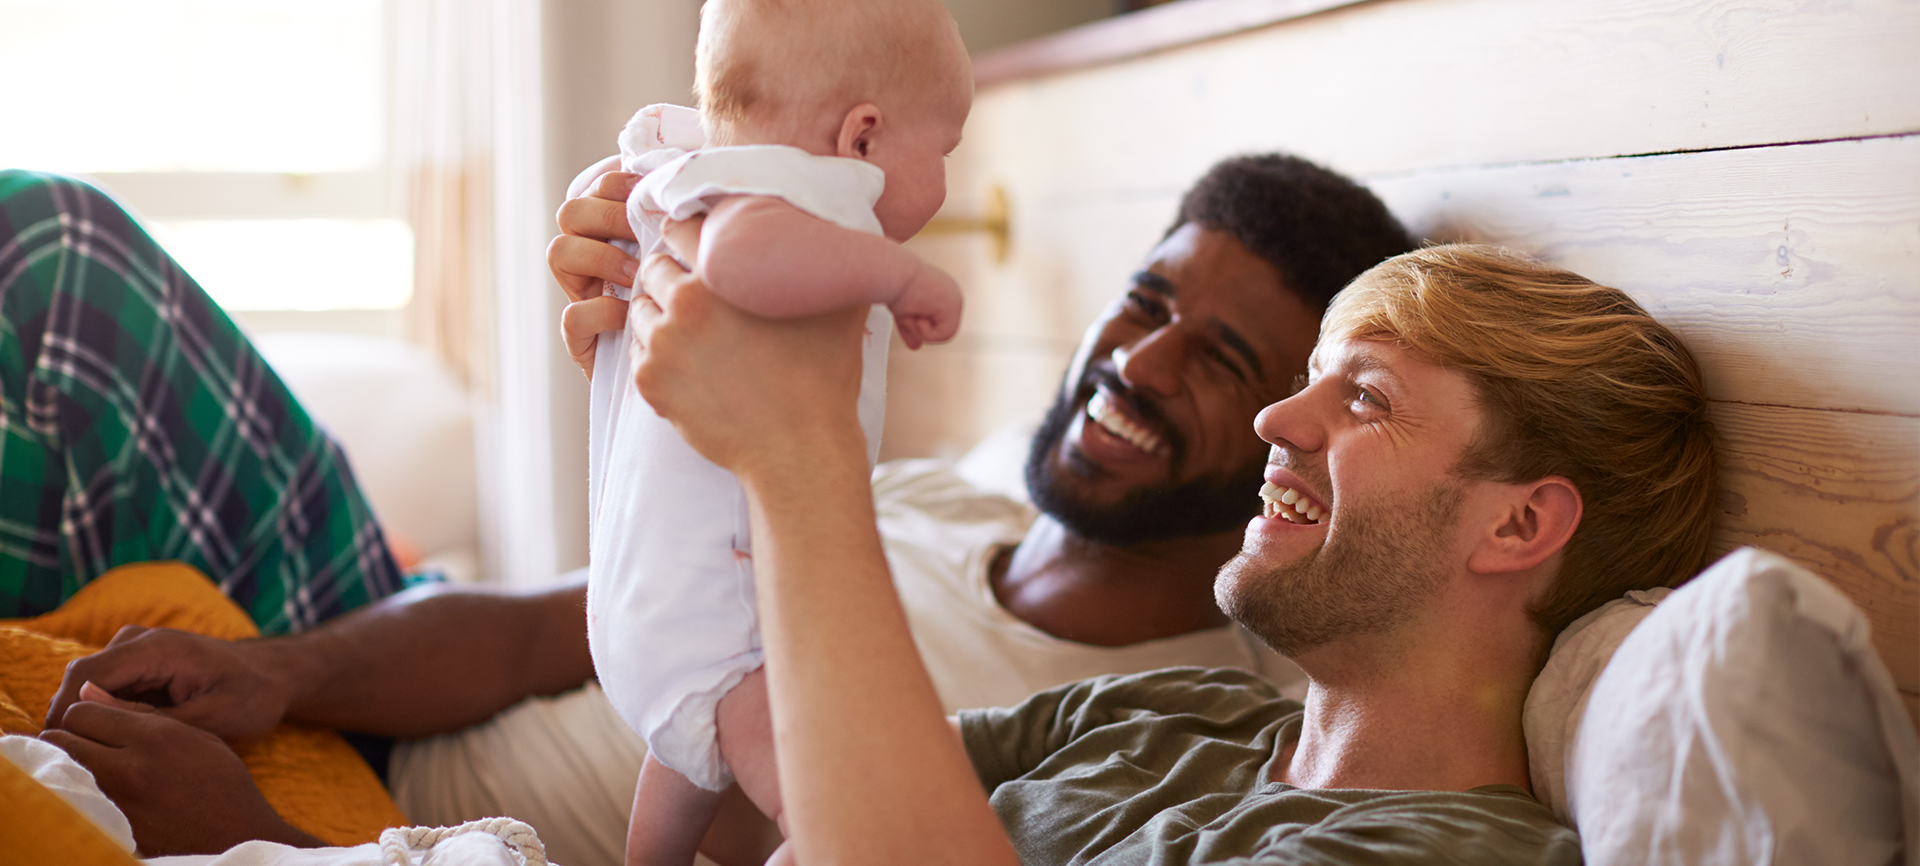 Casais homoafetivos masculinos: possibilidades de ter filhos